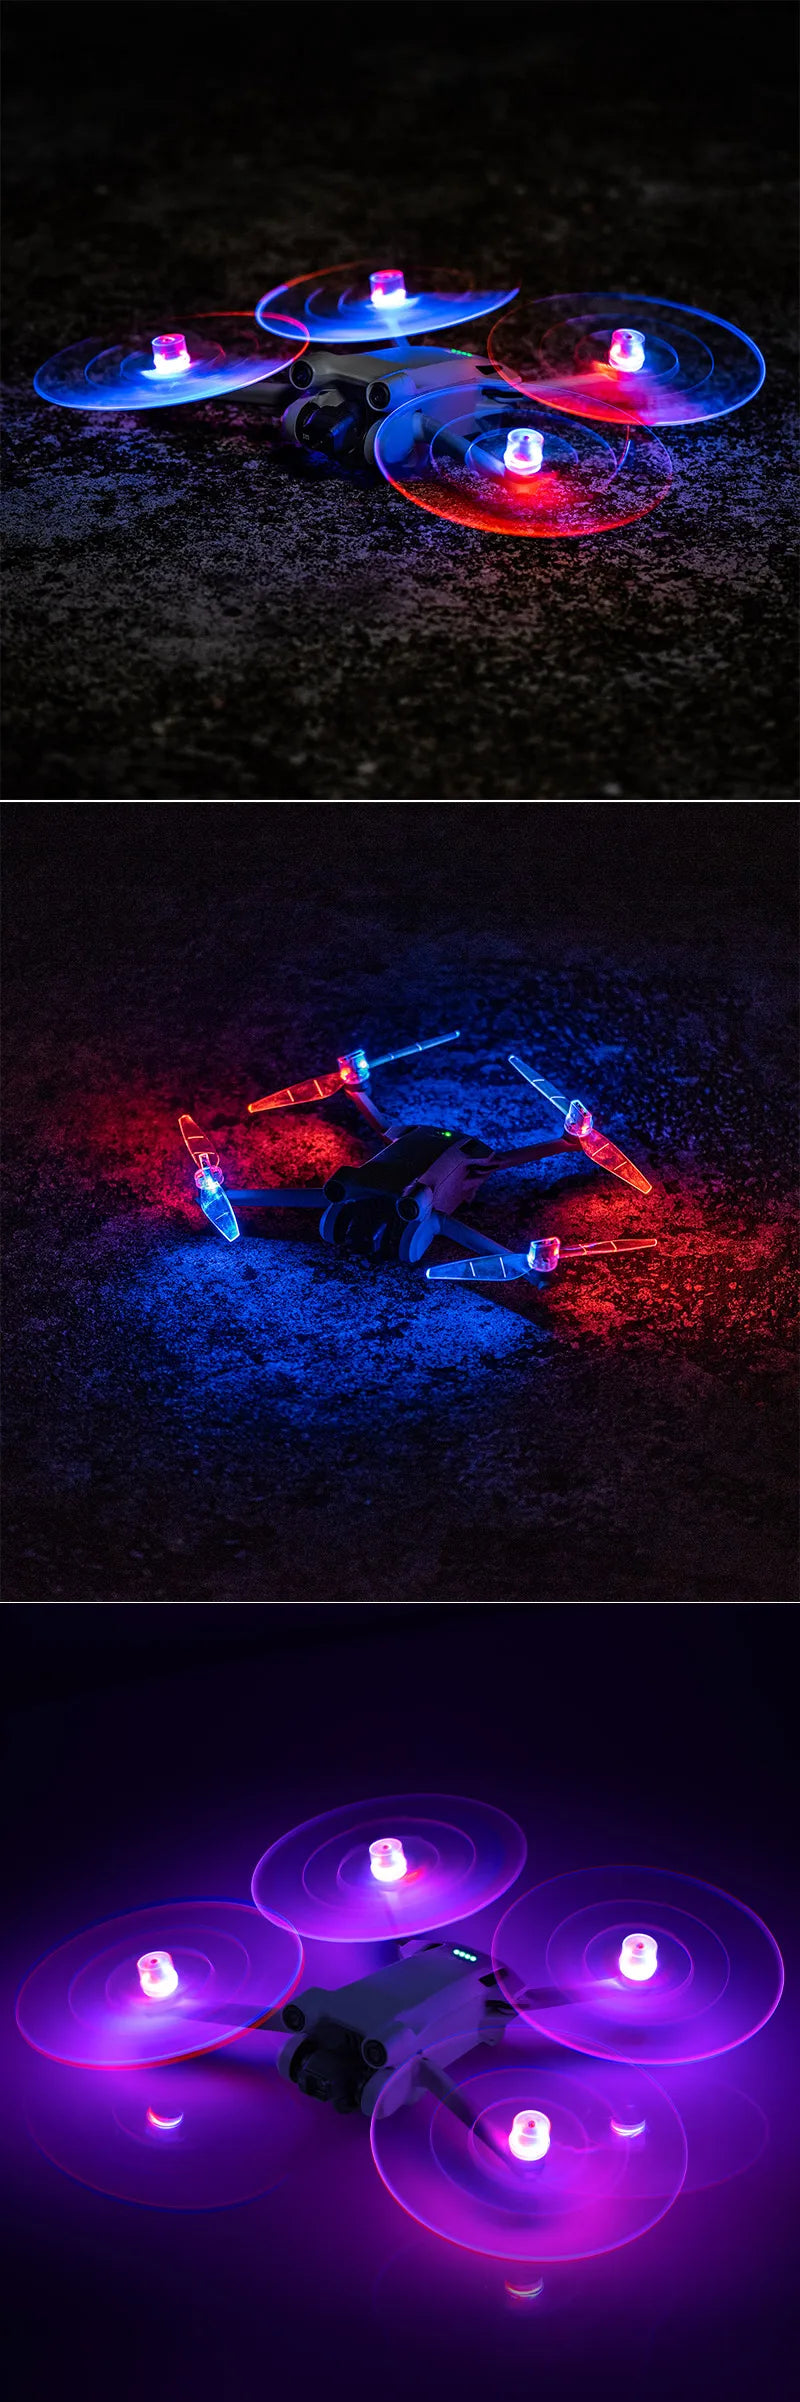 LED Light Flash Propeller, dji mini 3 pro drone comes with 4pcs LED light flash propeller